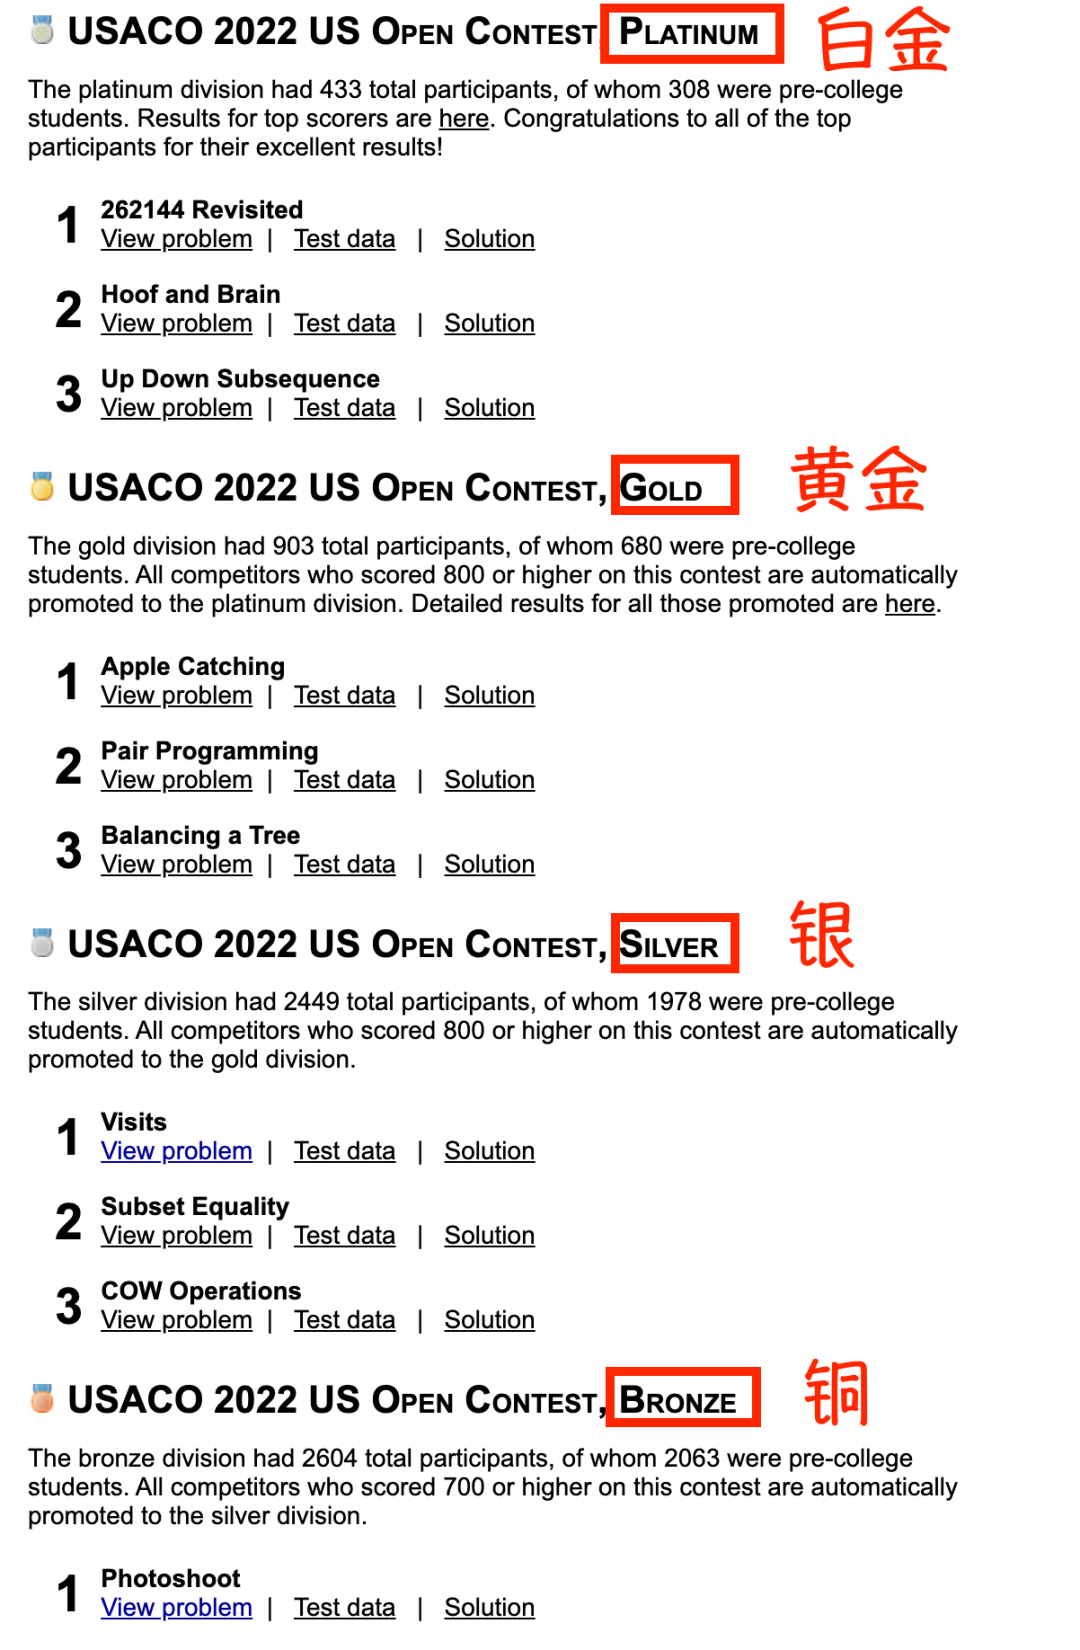 最详细的美国信奥赛学习指南来了！参加USACO需要做哪些准备？